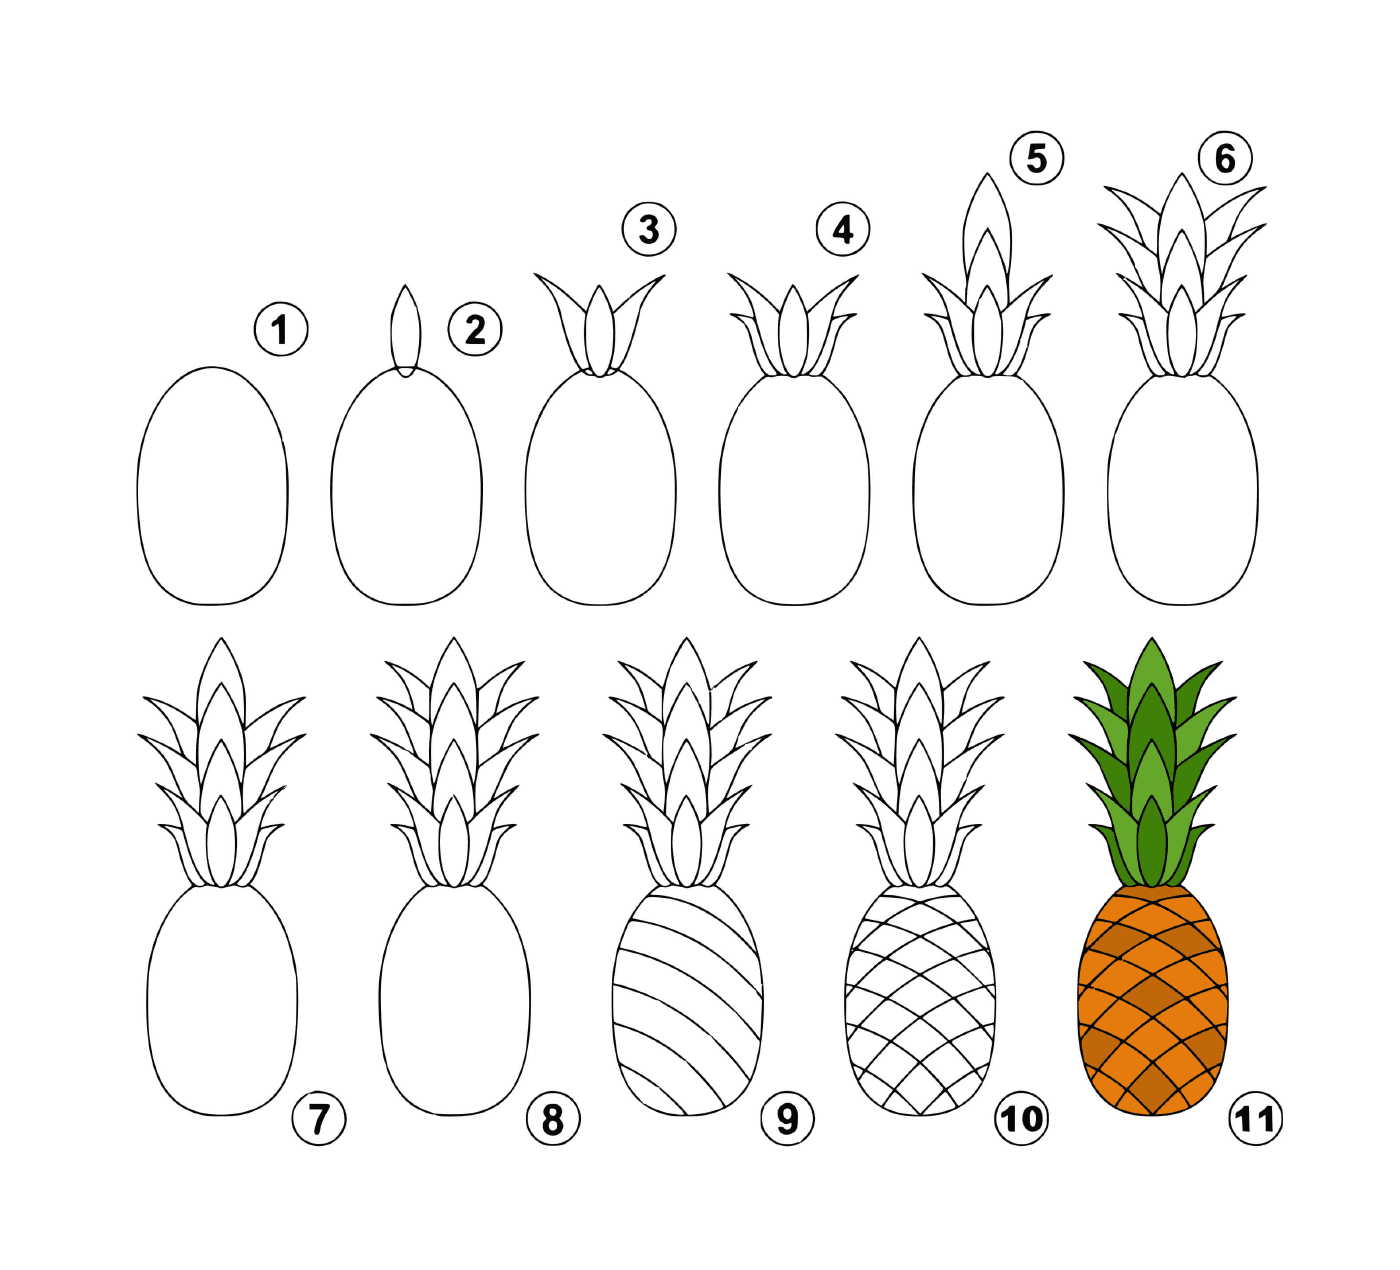  Como desenhar um abacaxi facilmente 